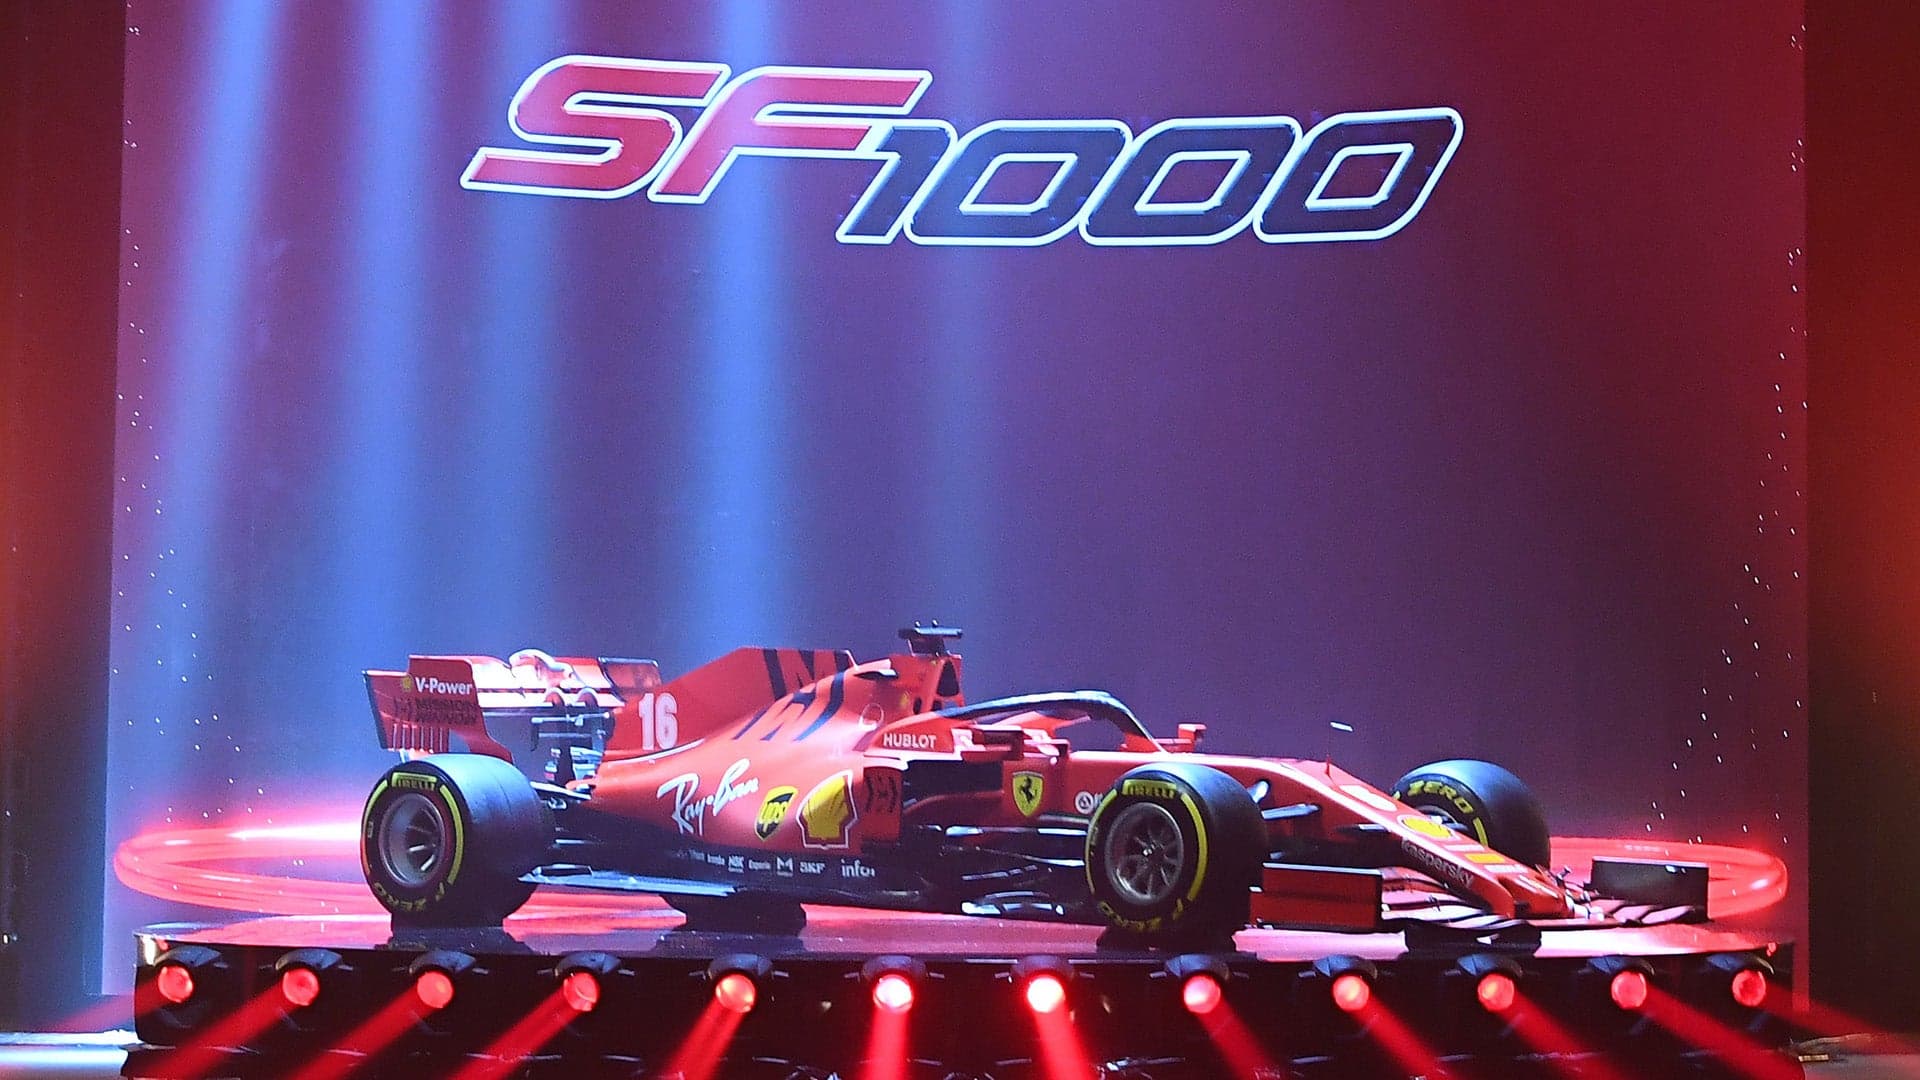 Ferrari SF1000 Celebrates the Scuderia’s Upcoming 1,000th F1 Race